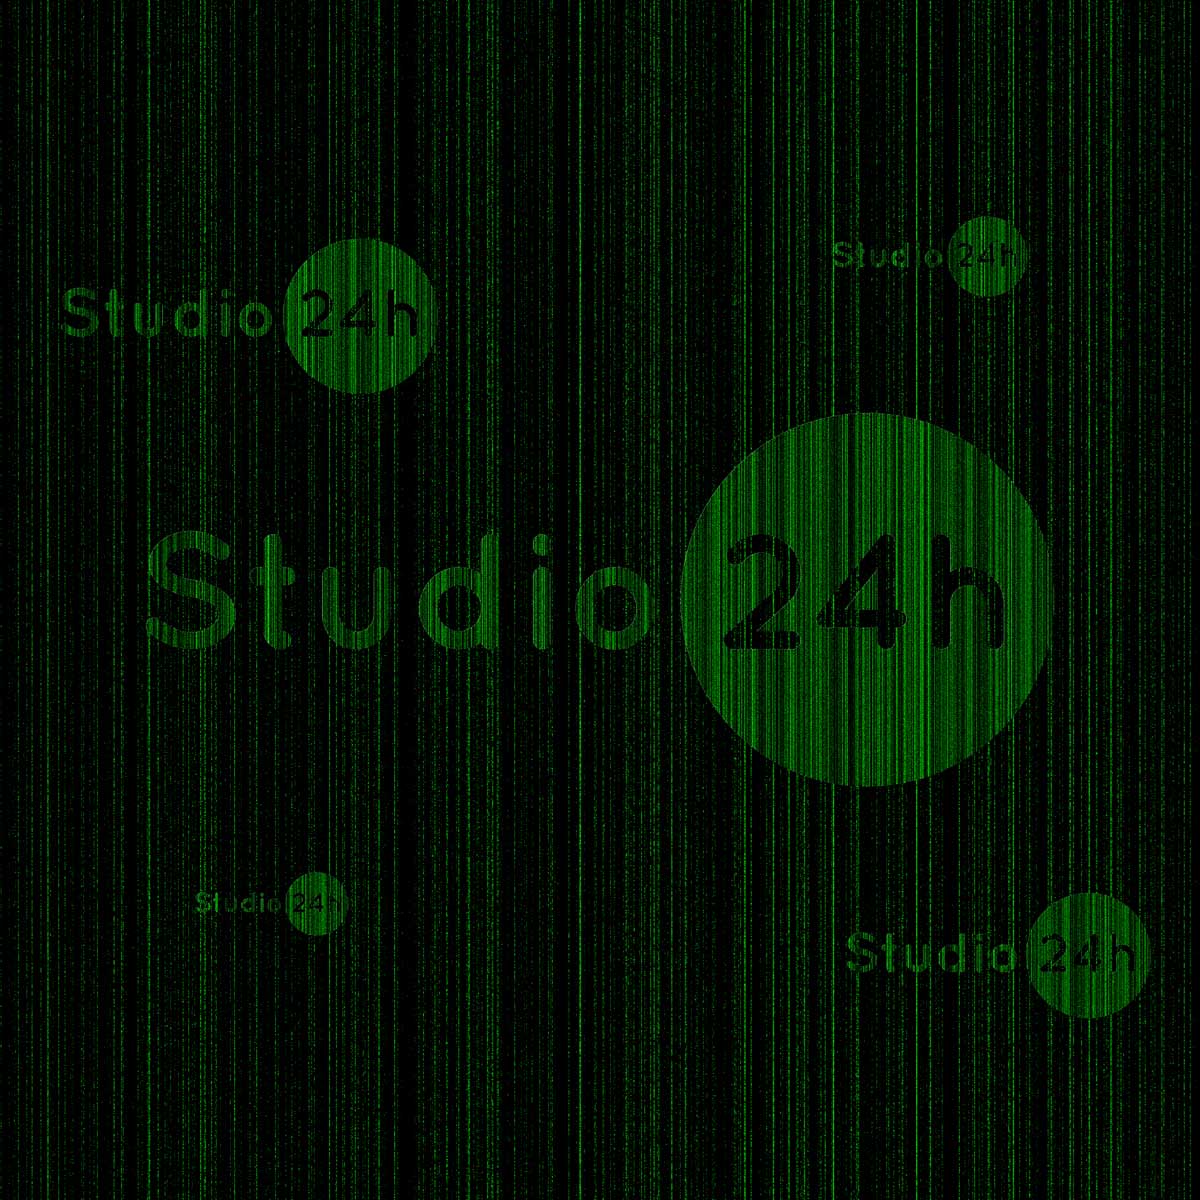 cyfrowe projekty graficzne studio 24h matrix